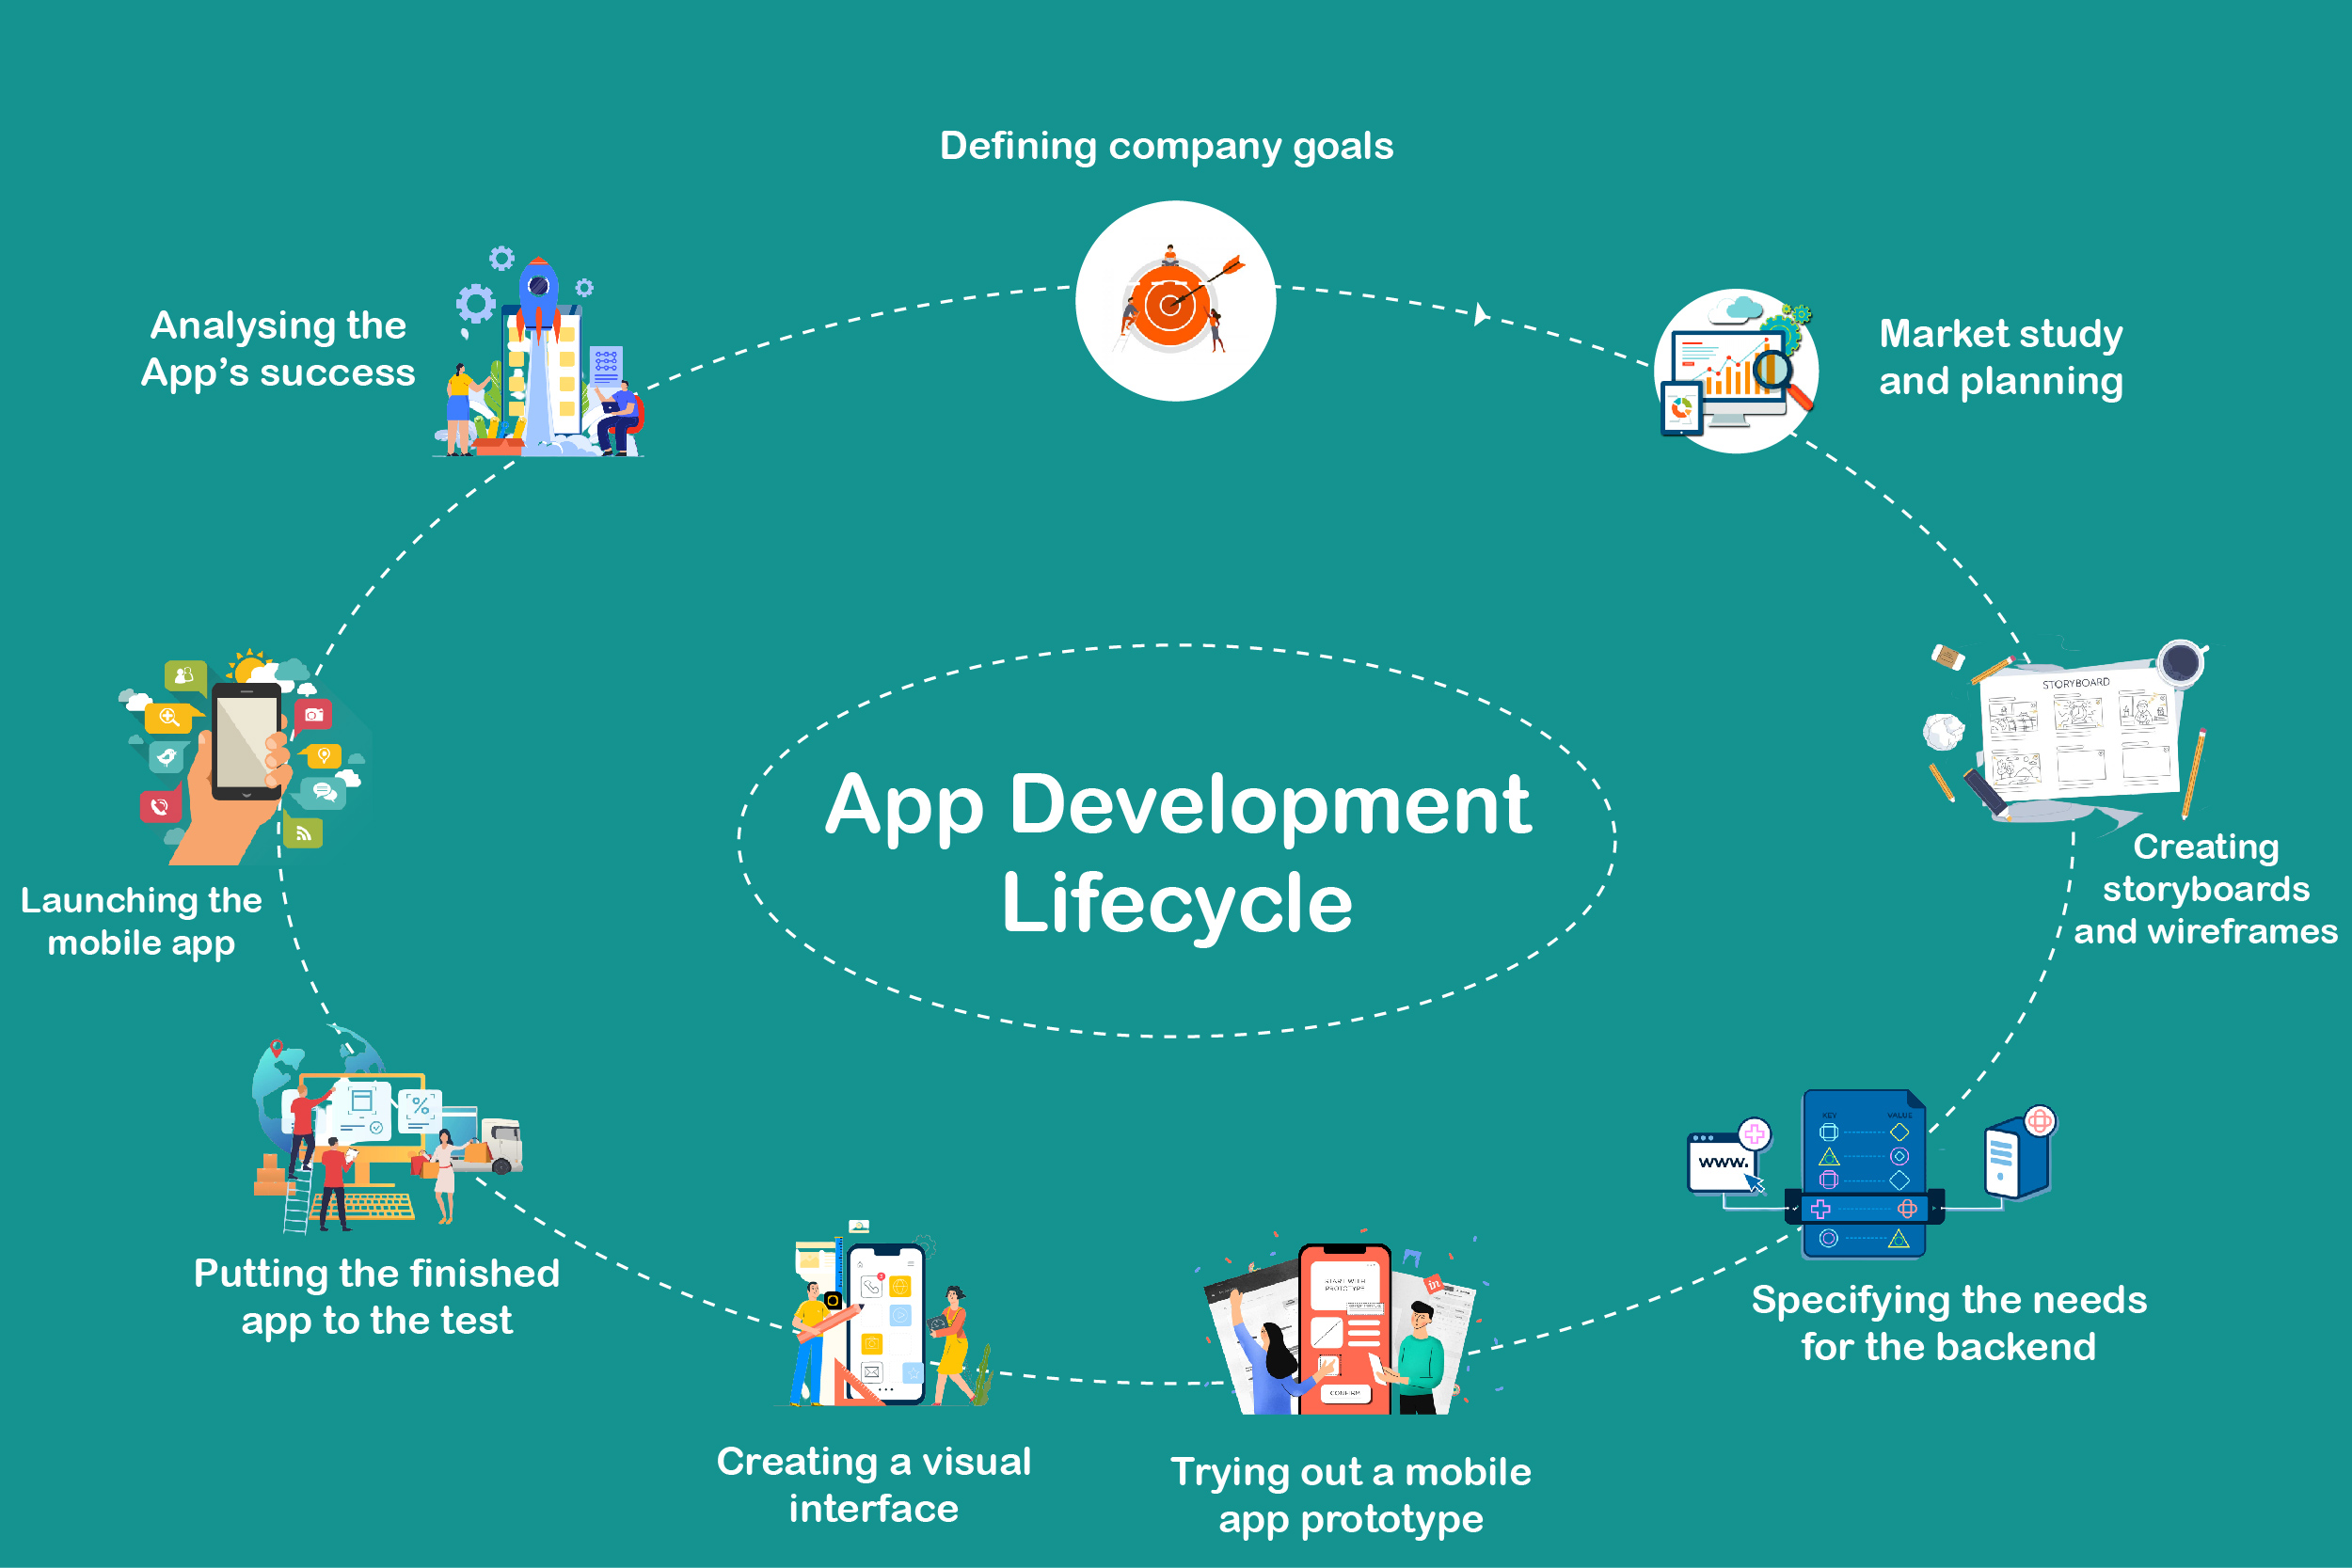 App development lifecycle